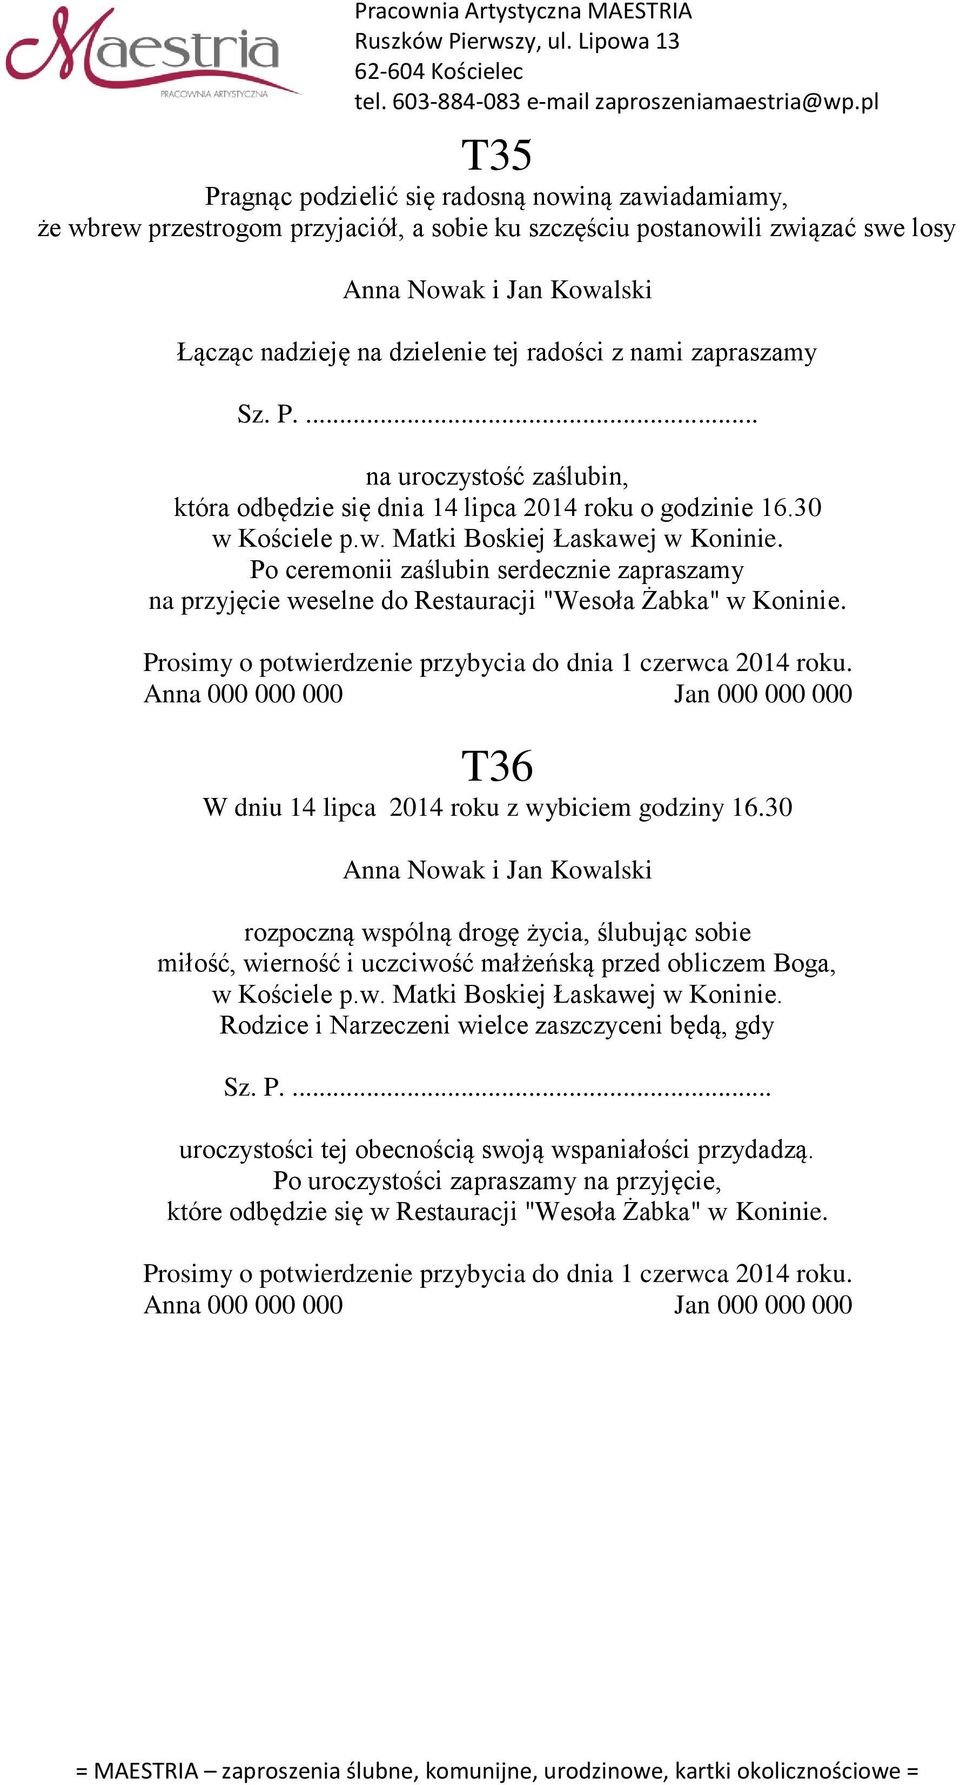 Po ceremonii zaślubin serdecznie zapraszamy na przyjęcie weselne do Restauracji "Wesoła Żabka" w Koninie. T36 W dniu 14 lipca 2014 roku z wybiciem godziny 16.